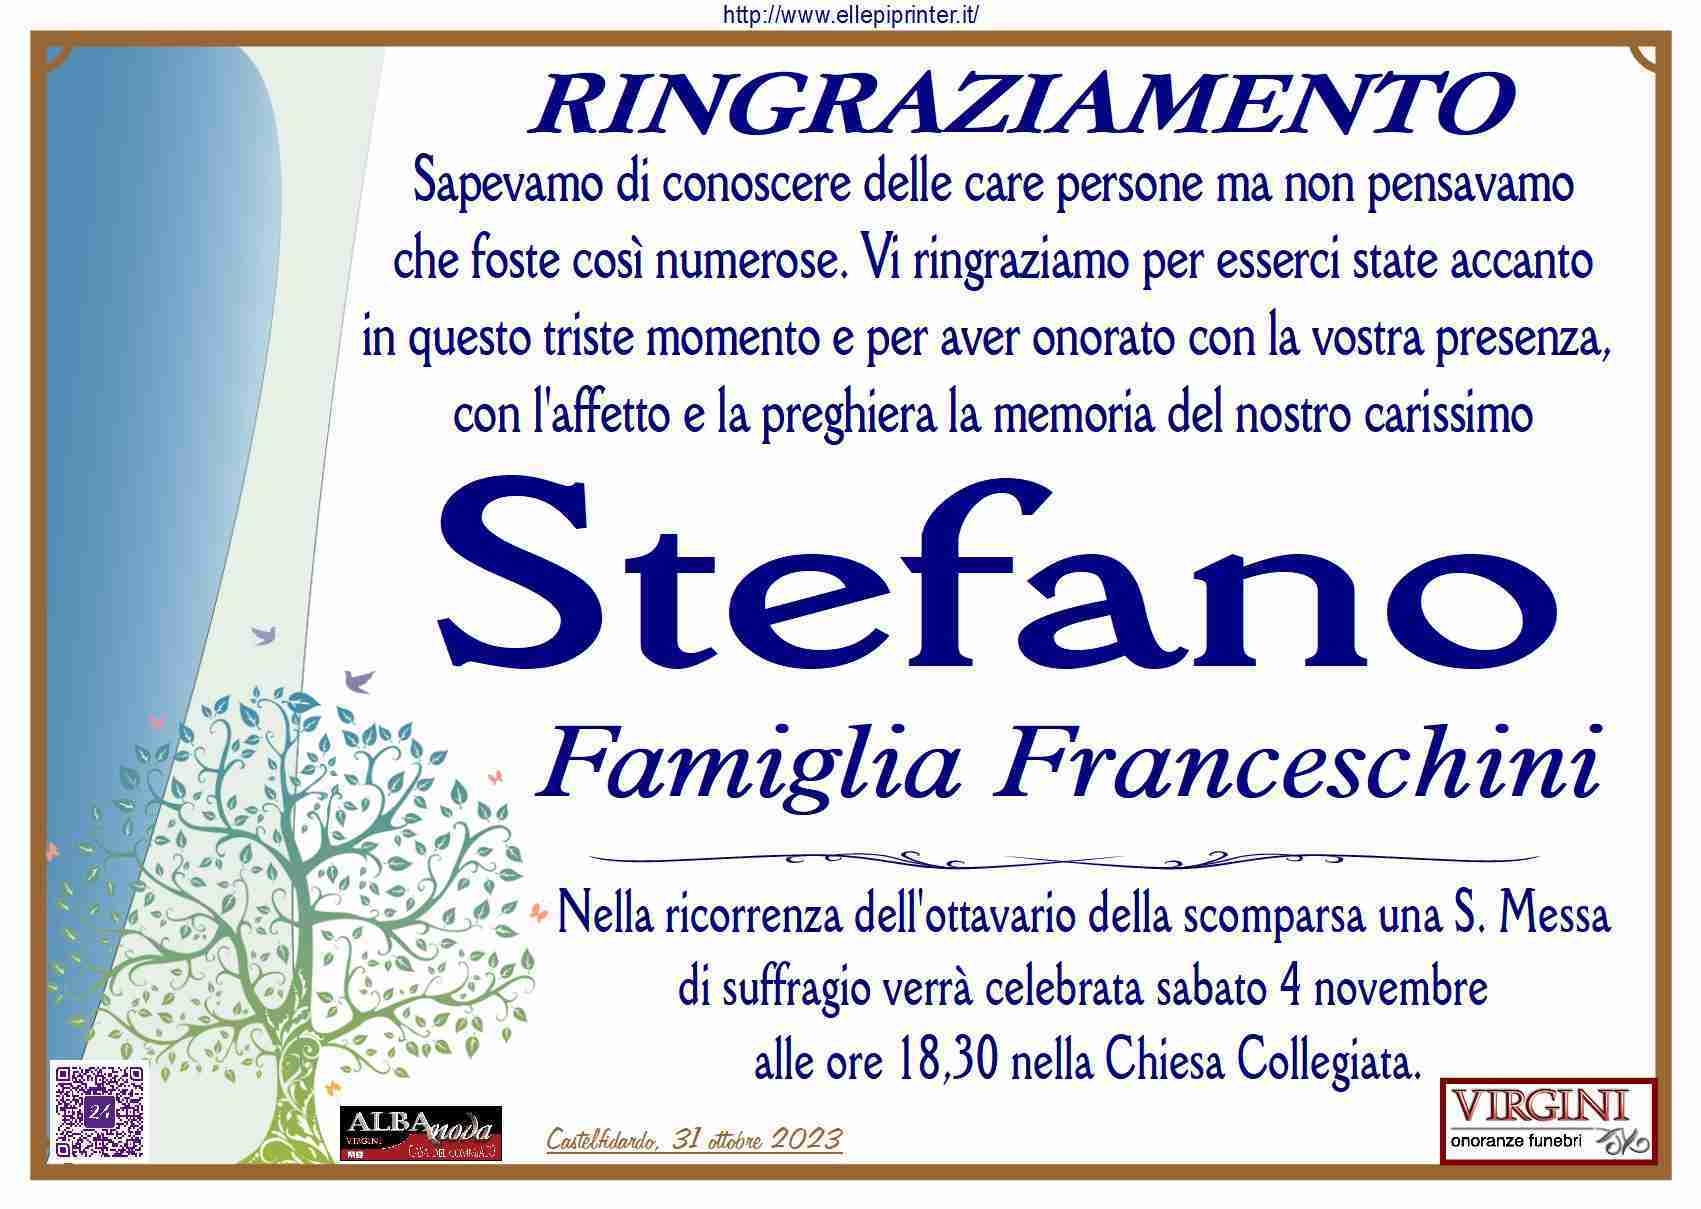 Stefano Franceschini